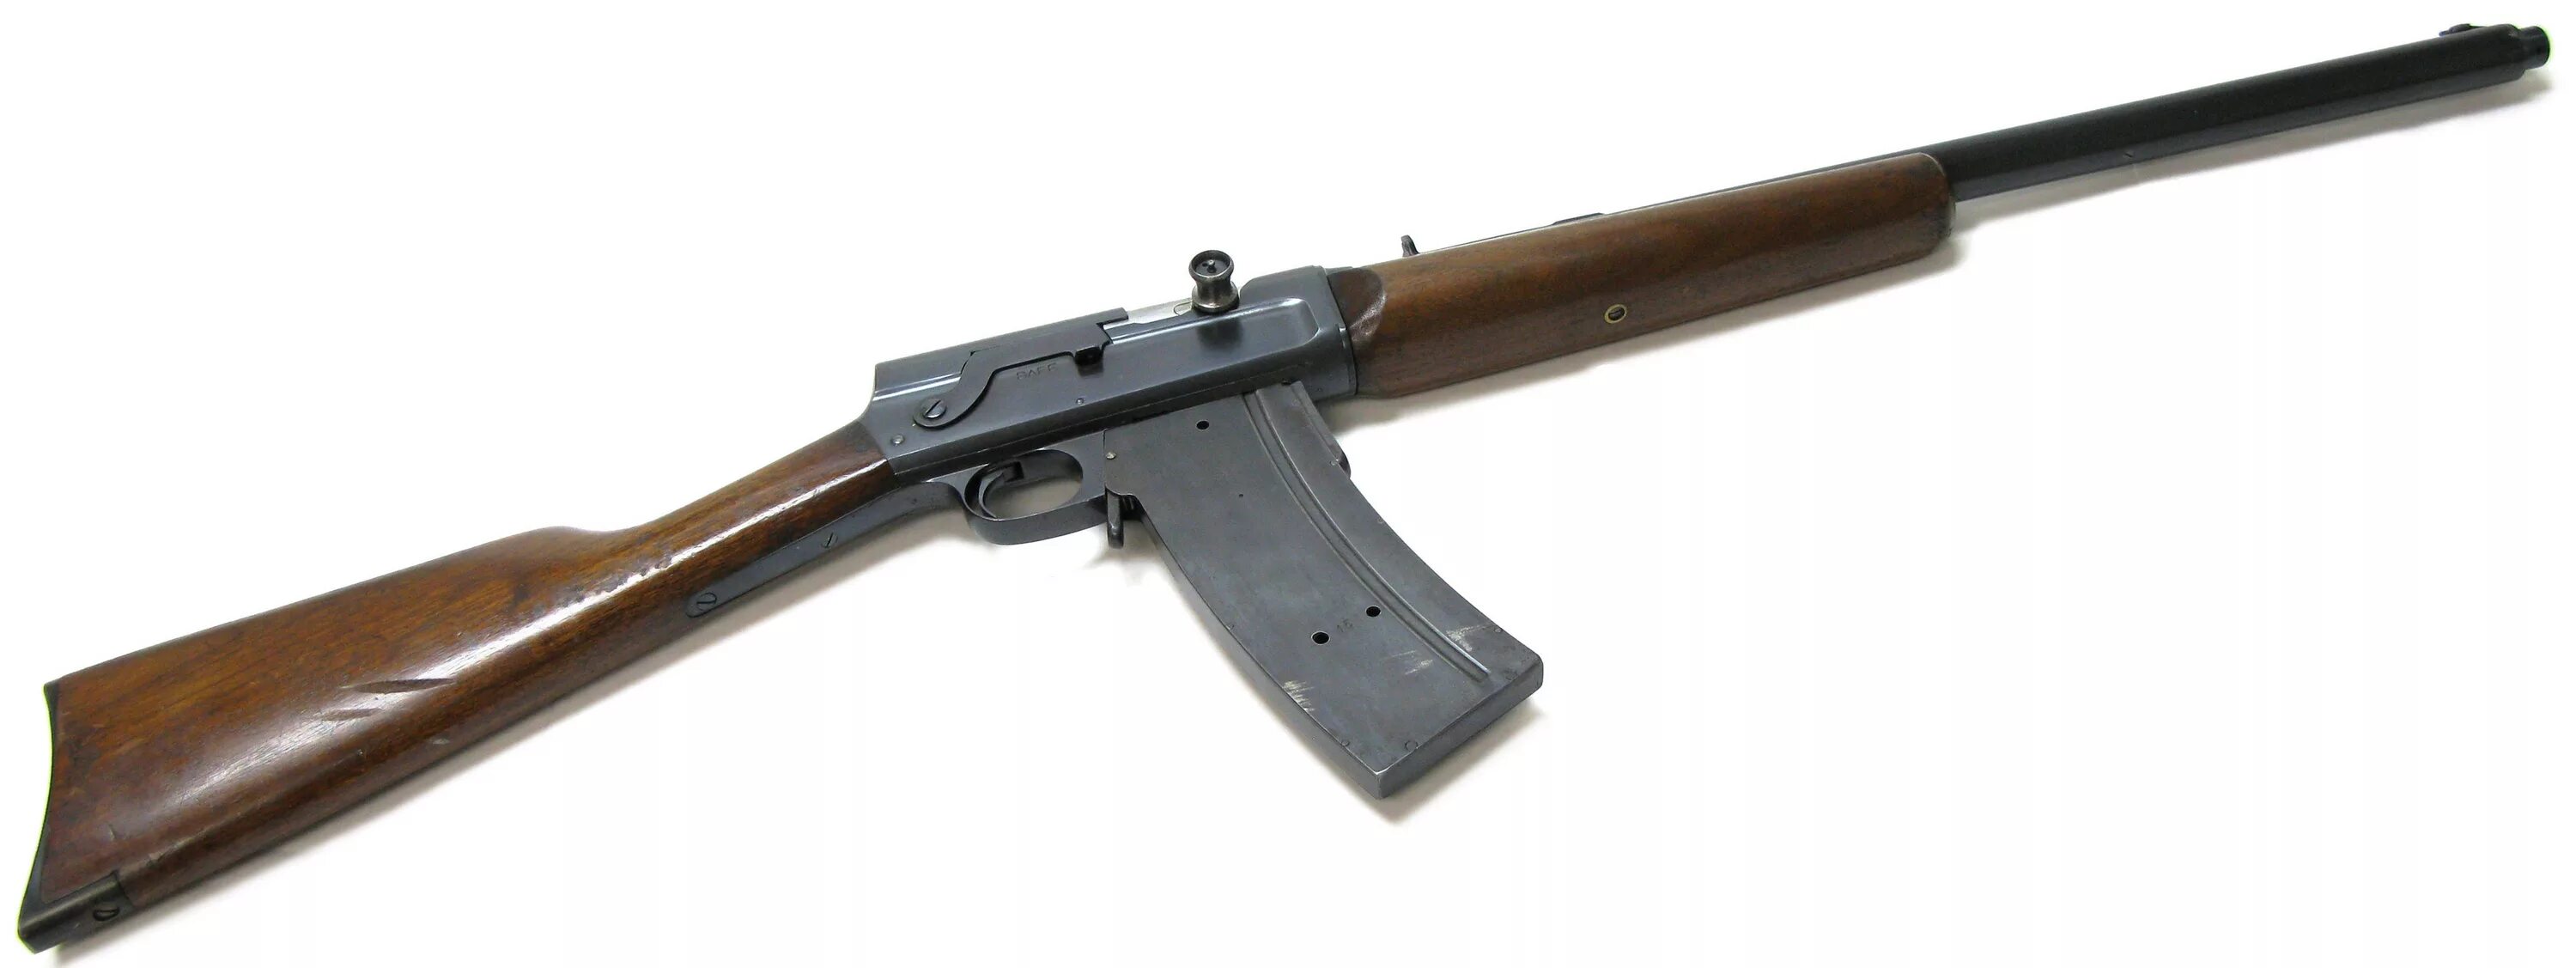 Модель 8 19. Ремингтон модель 8 карабин. Винтовка Ремингтон модель 8. Remington Autoloading Rifle / model 8. Remington model 8 под патрон.25 Remington.